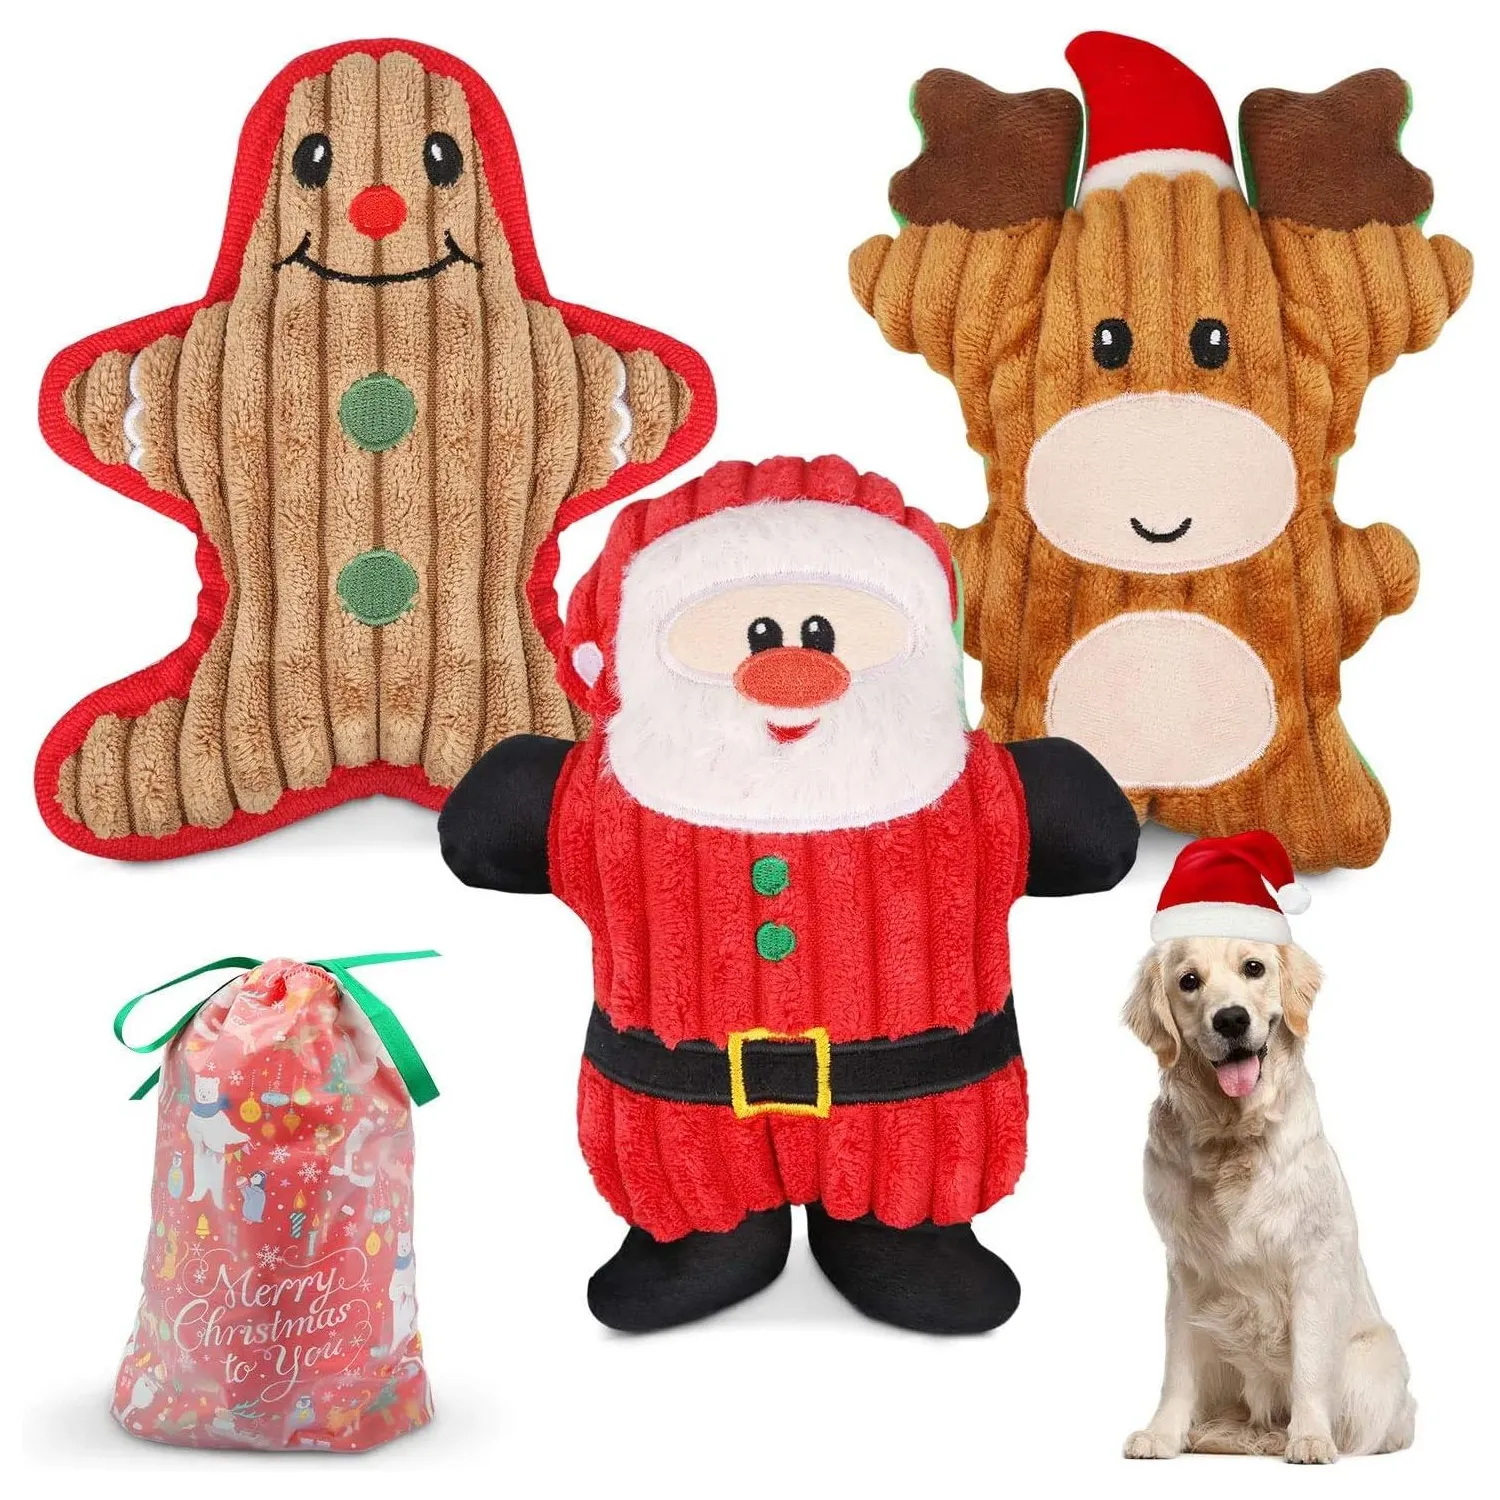 Plüsch interaktive schrill-Spielzeuge Weihnachtsgeschenk inklusive Ingwer-Mensch Rentier Weihnachtsmann 3-teiliges Set Hund Weihnachtsspielzeug